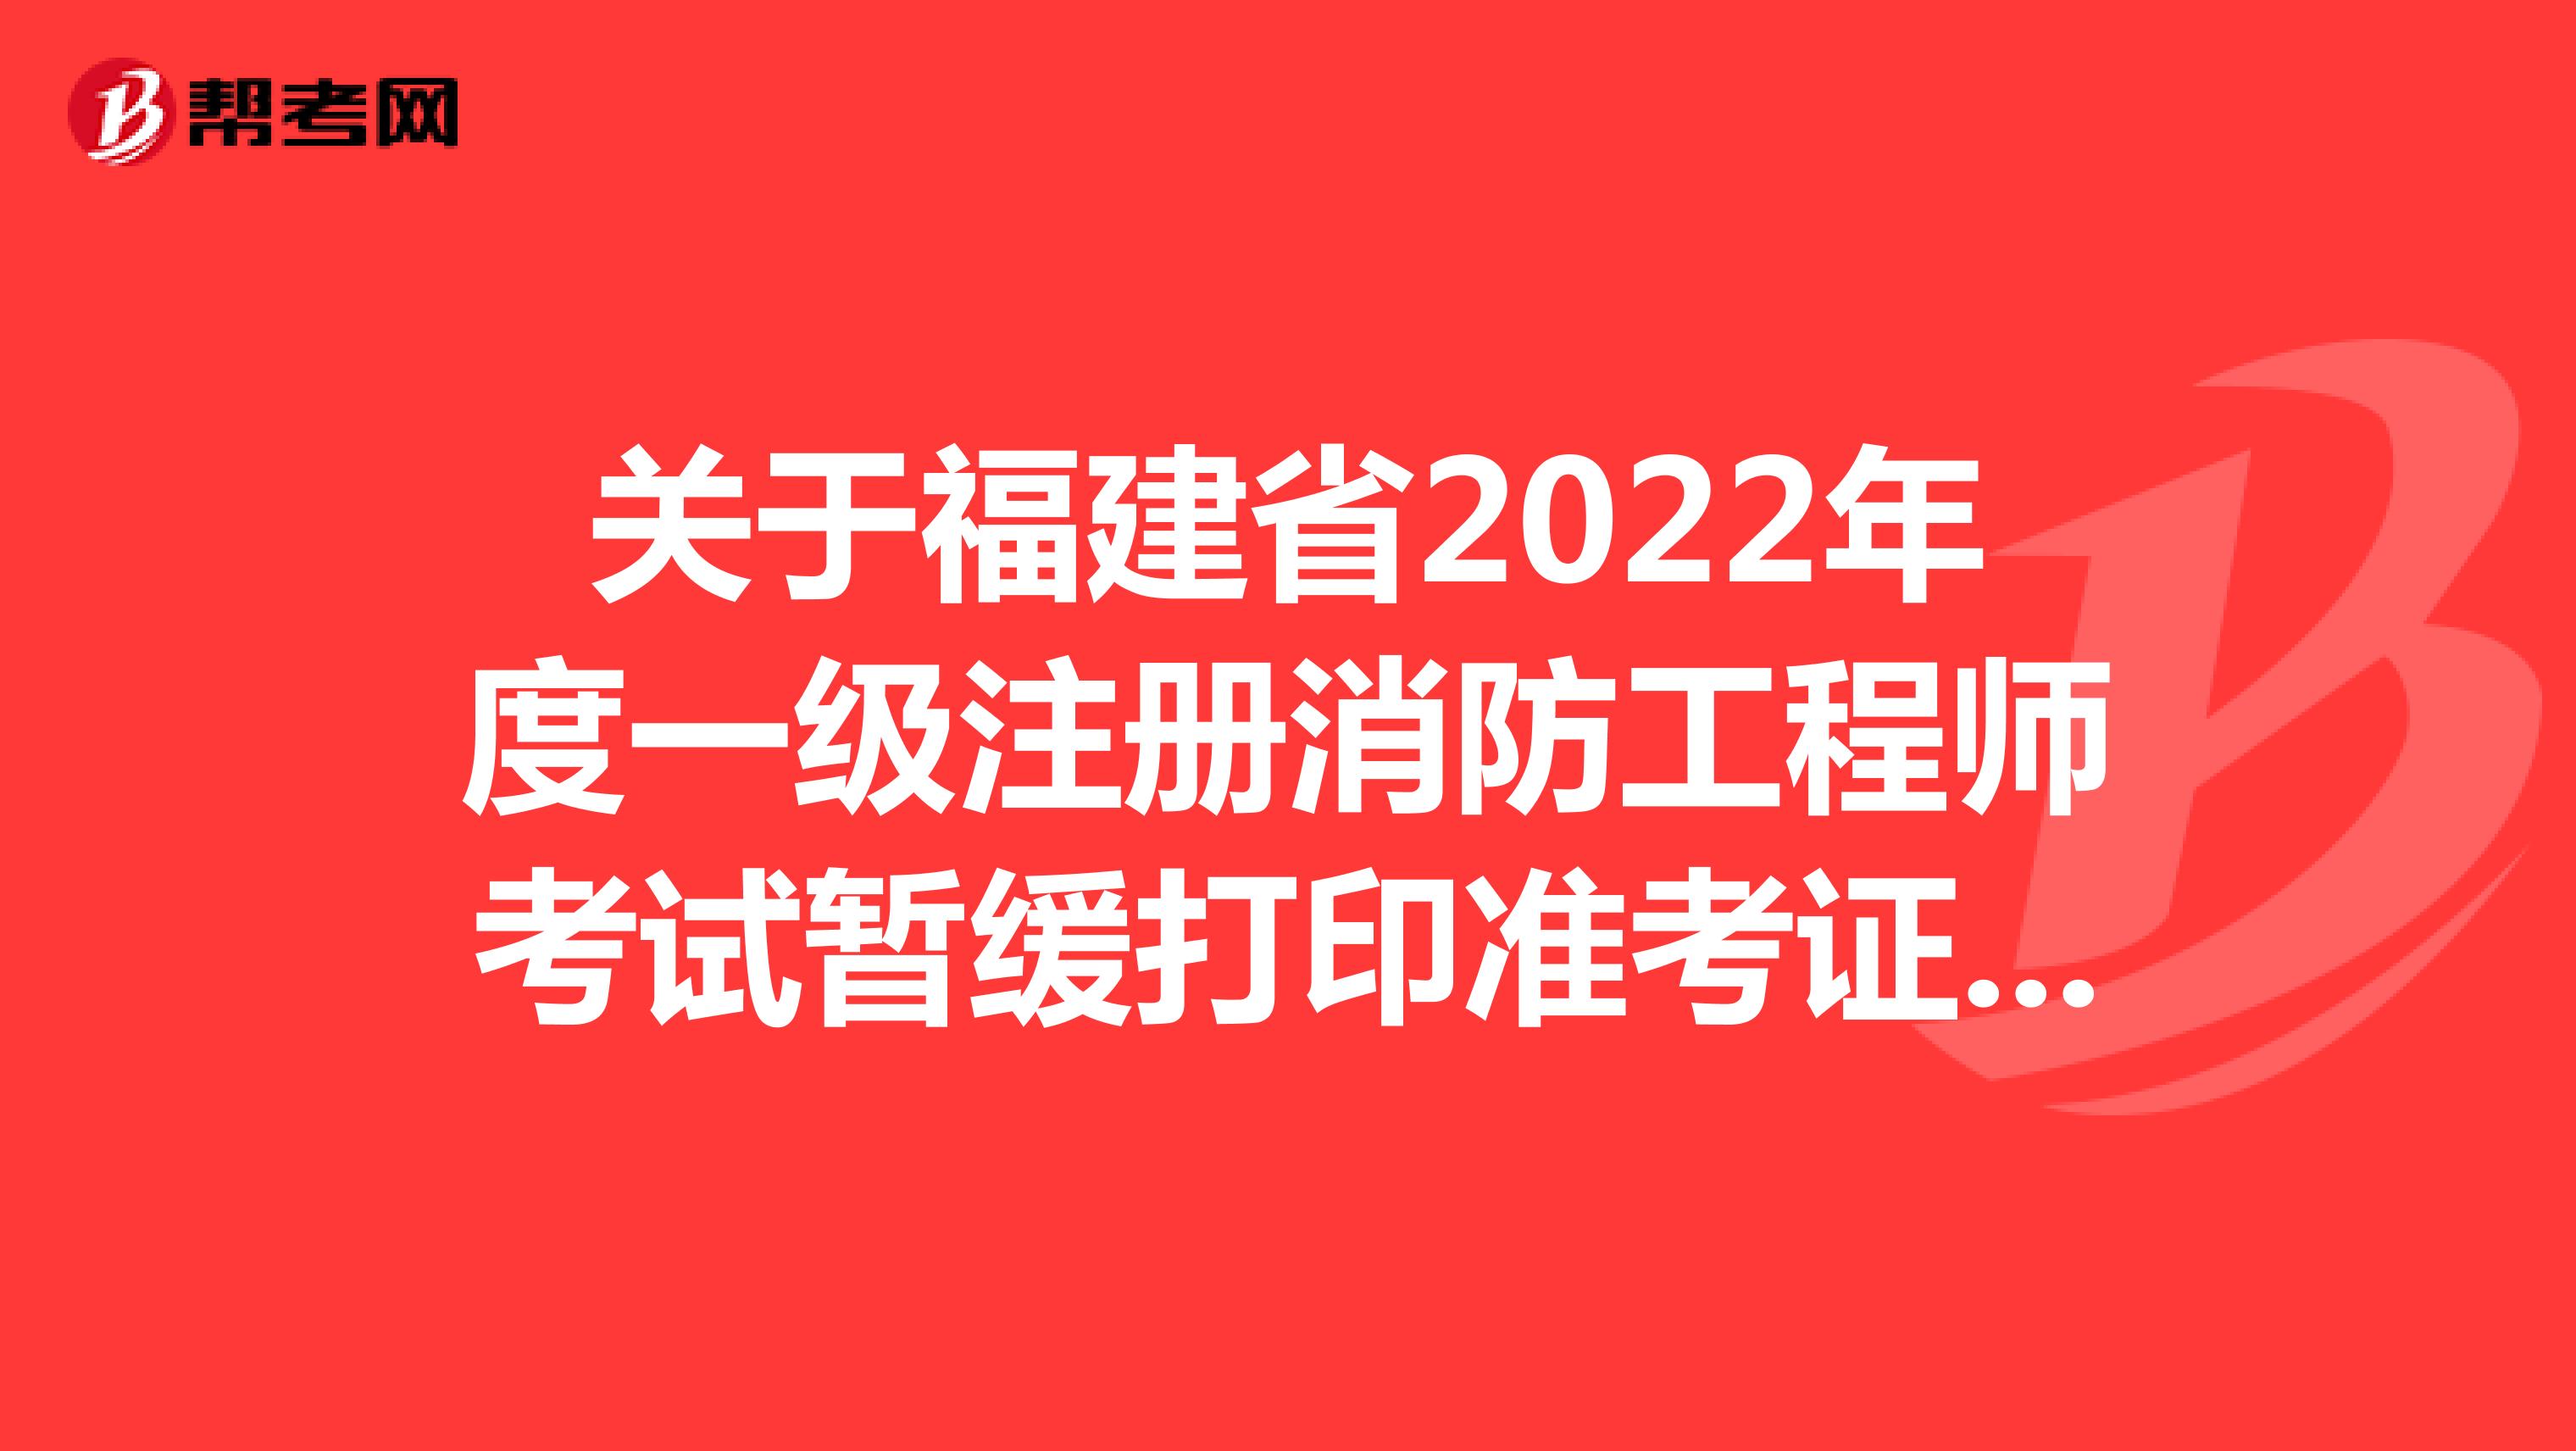 关于福建省2022年度一级注册消防工程师考试暂缓打印准考证的通知